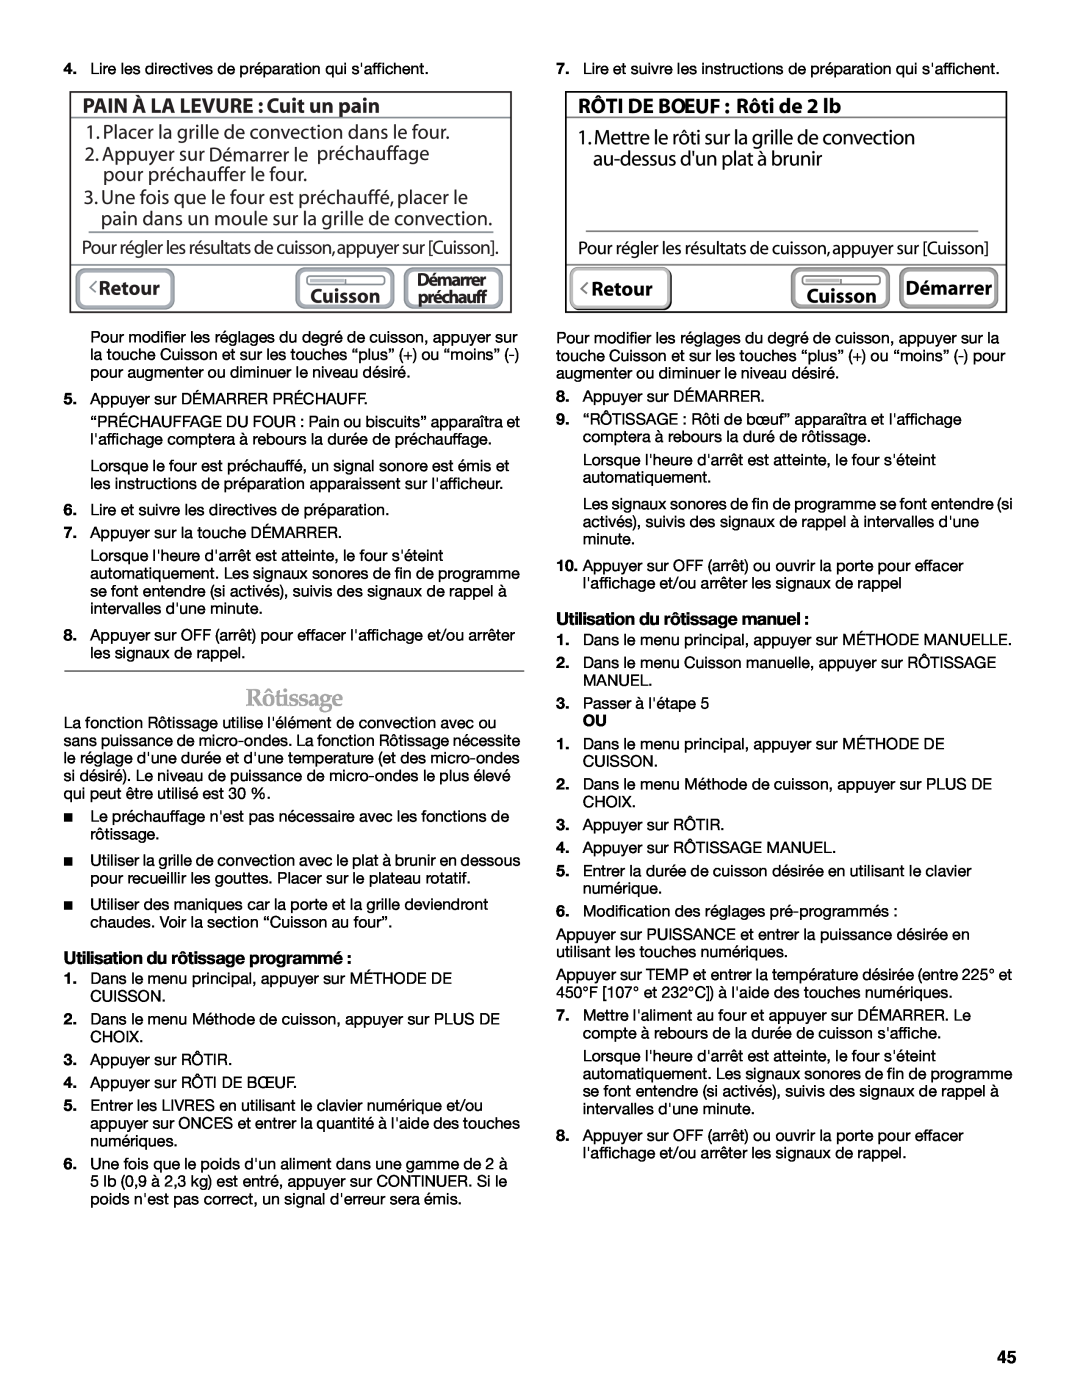 KitchenAid KEHU309 manual Rôtissage, Utilisation du rôtissage programmé, Utilisation du rôtissage manuel 